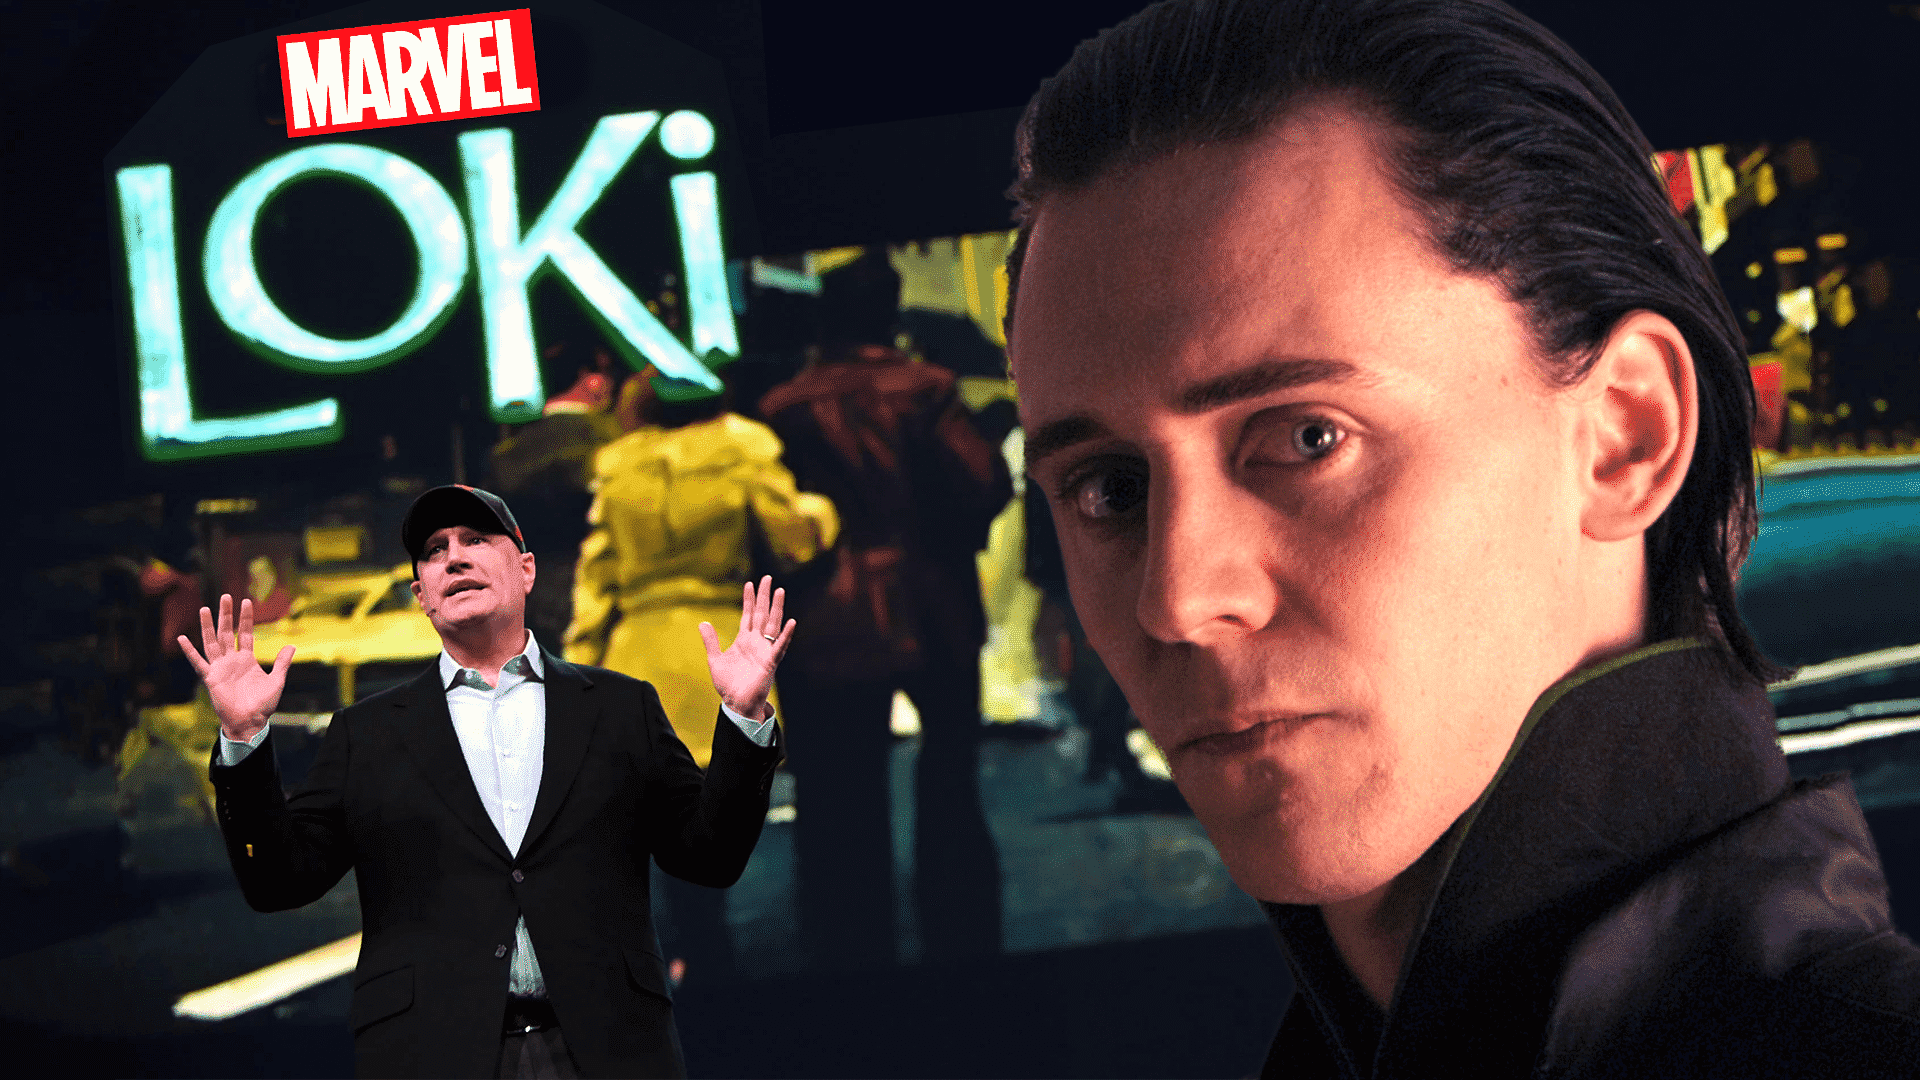 Loki v Avengers: Endgame